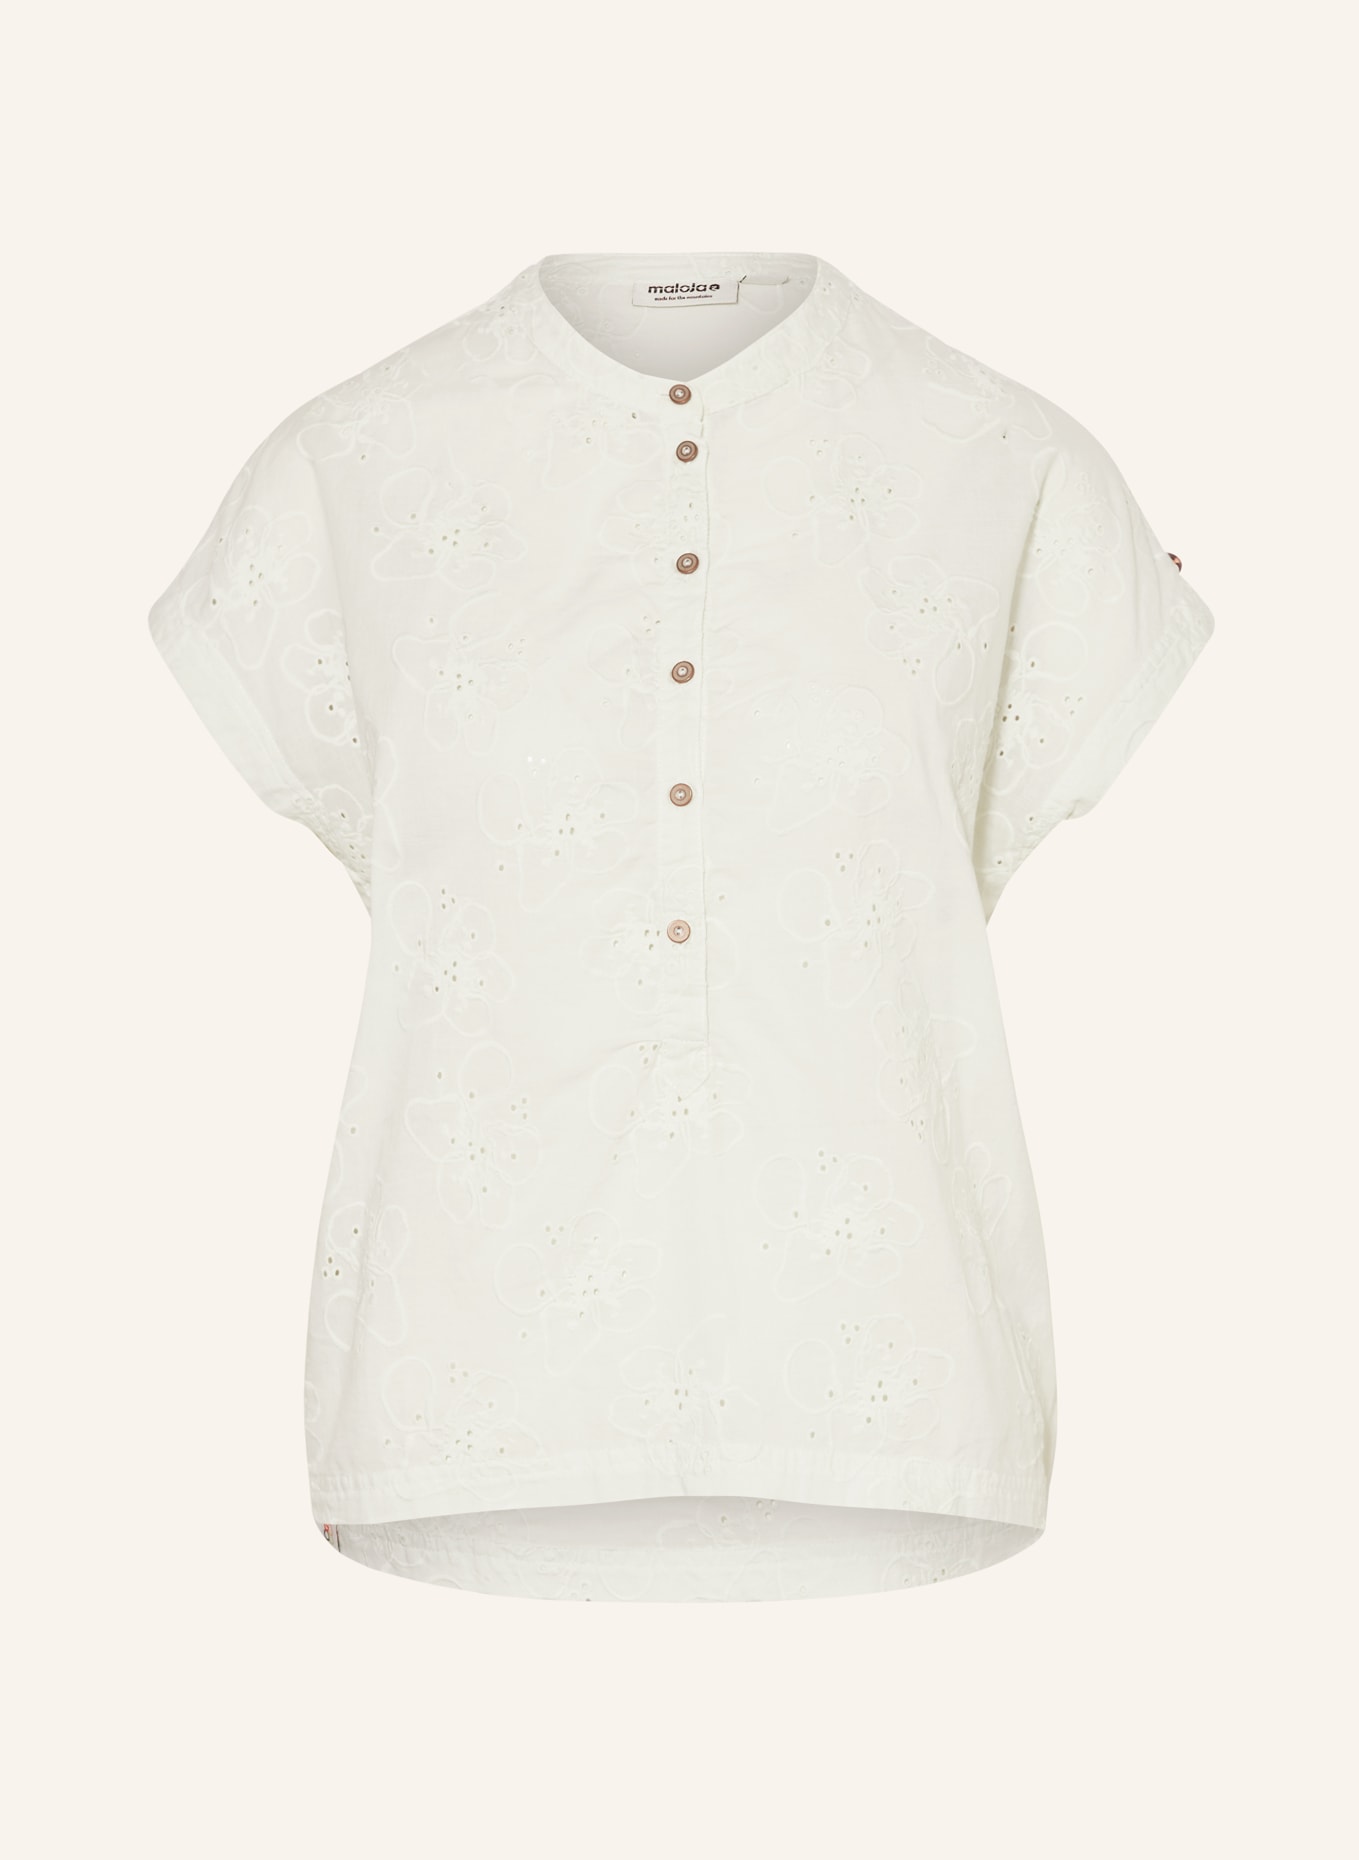 maloja Shirt blouse AMBERSEEM., Color: PURPLE (Image 1)